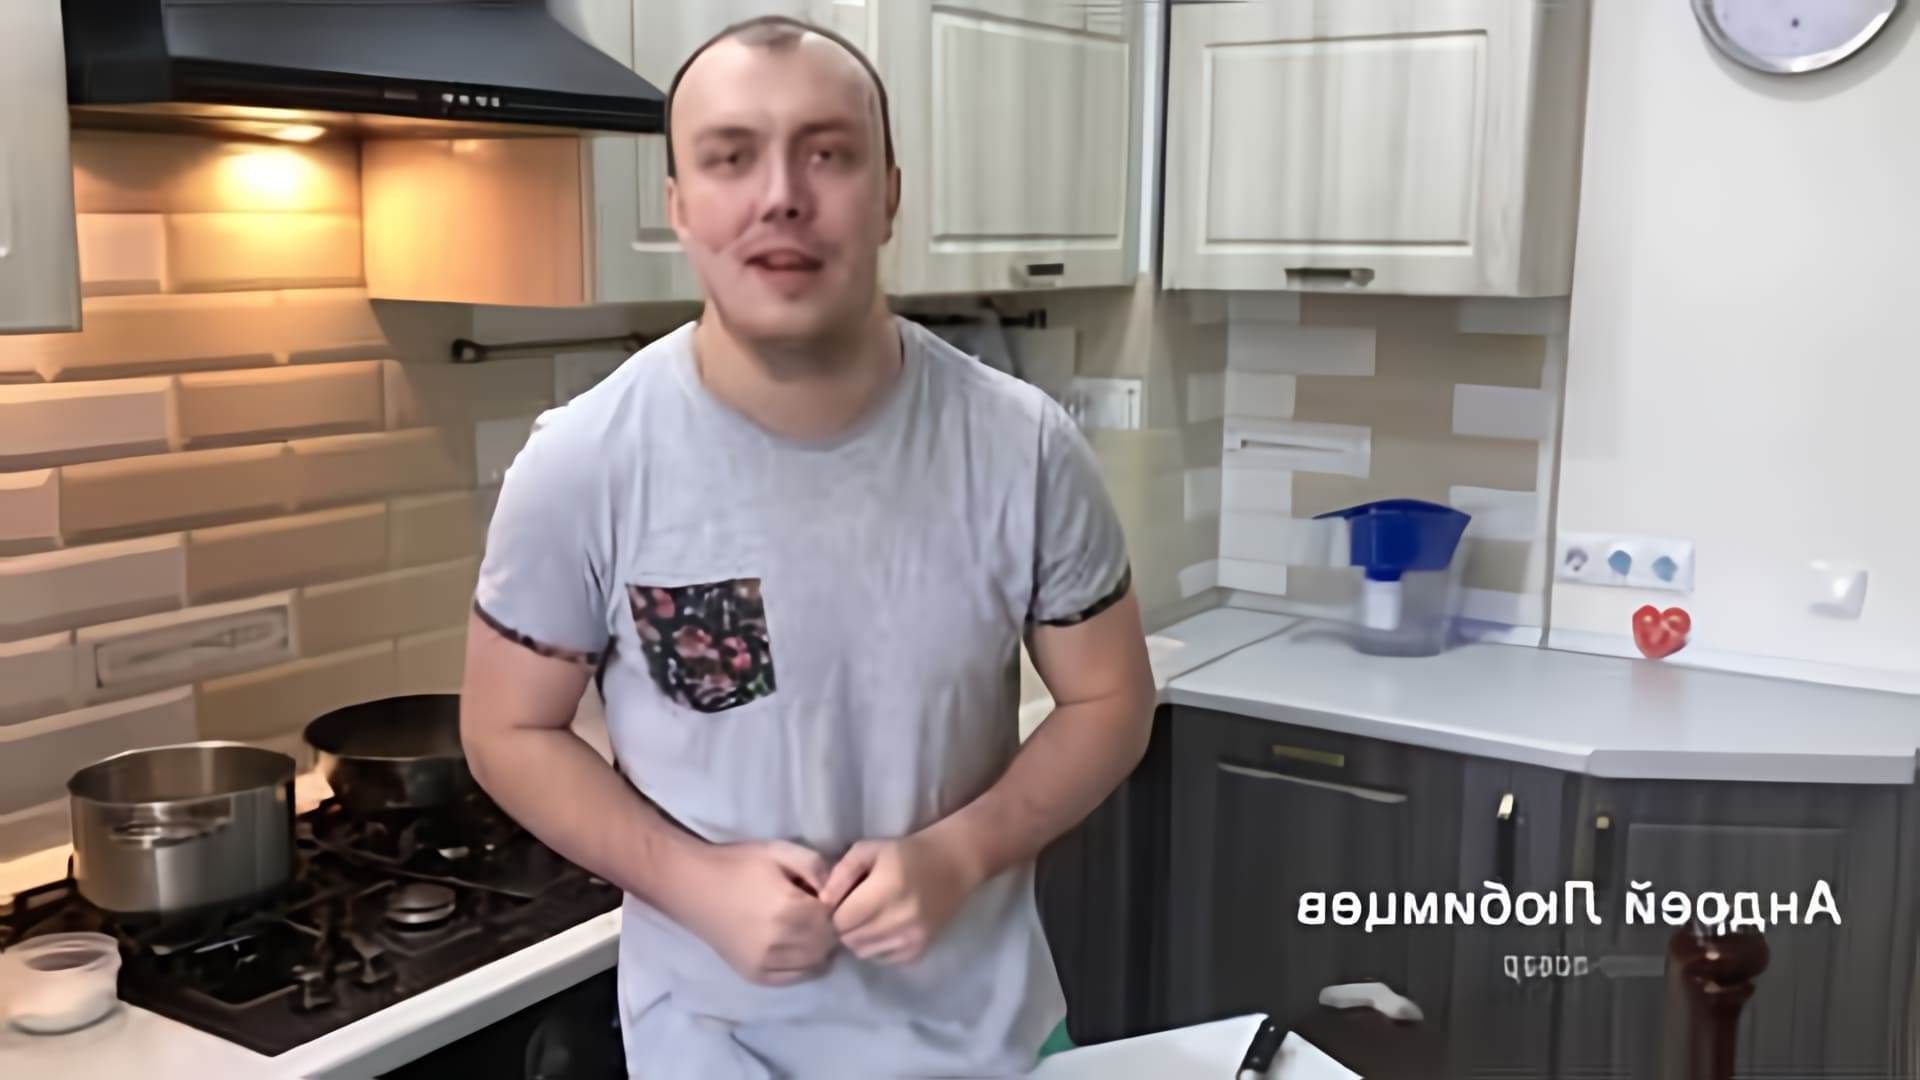 В этом видео демонстрируется рецепт приготовления удон с курицей и овощами, который можно приготовить всего за пять минут и за 50 рублей